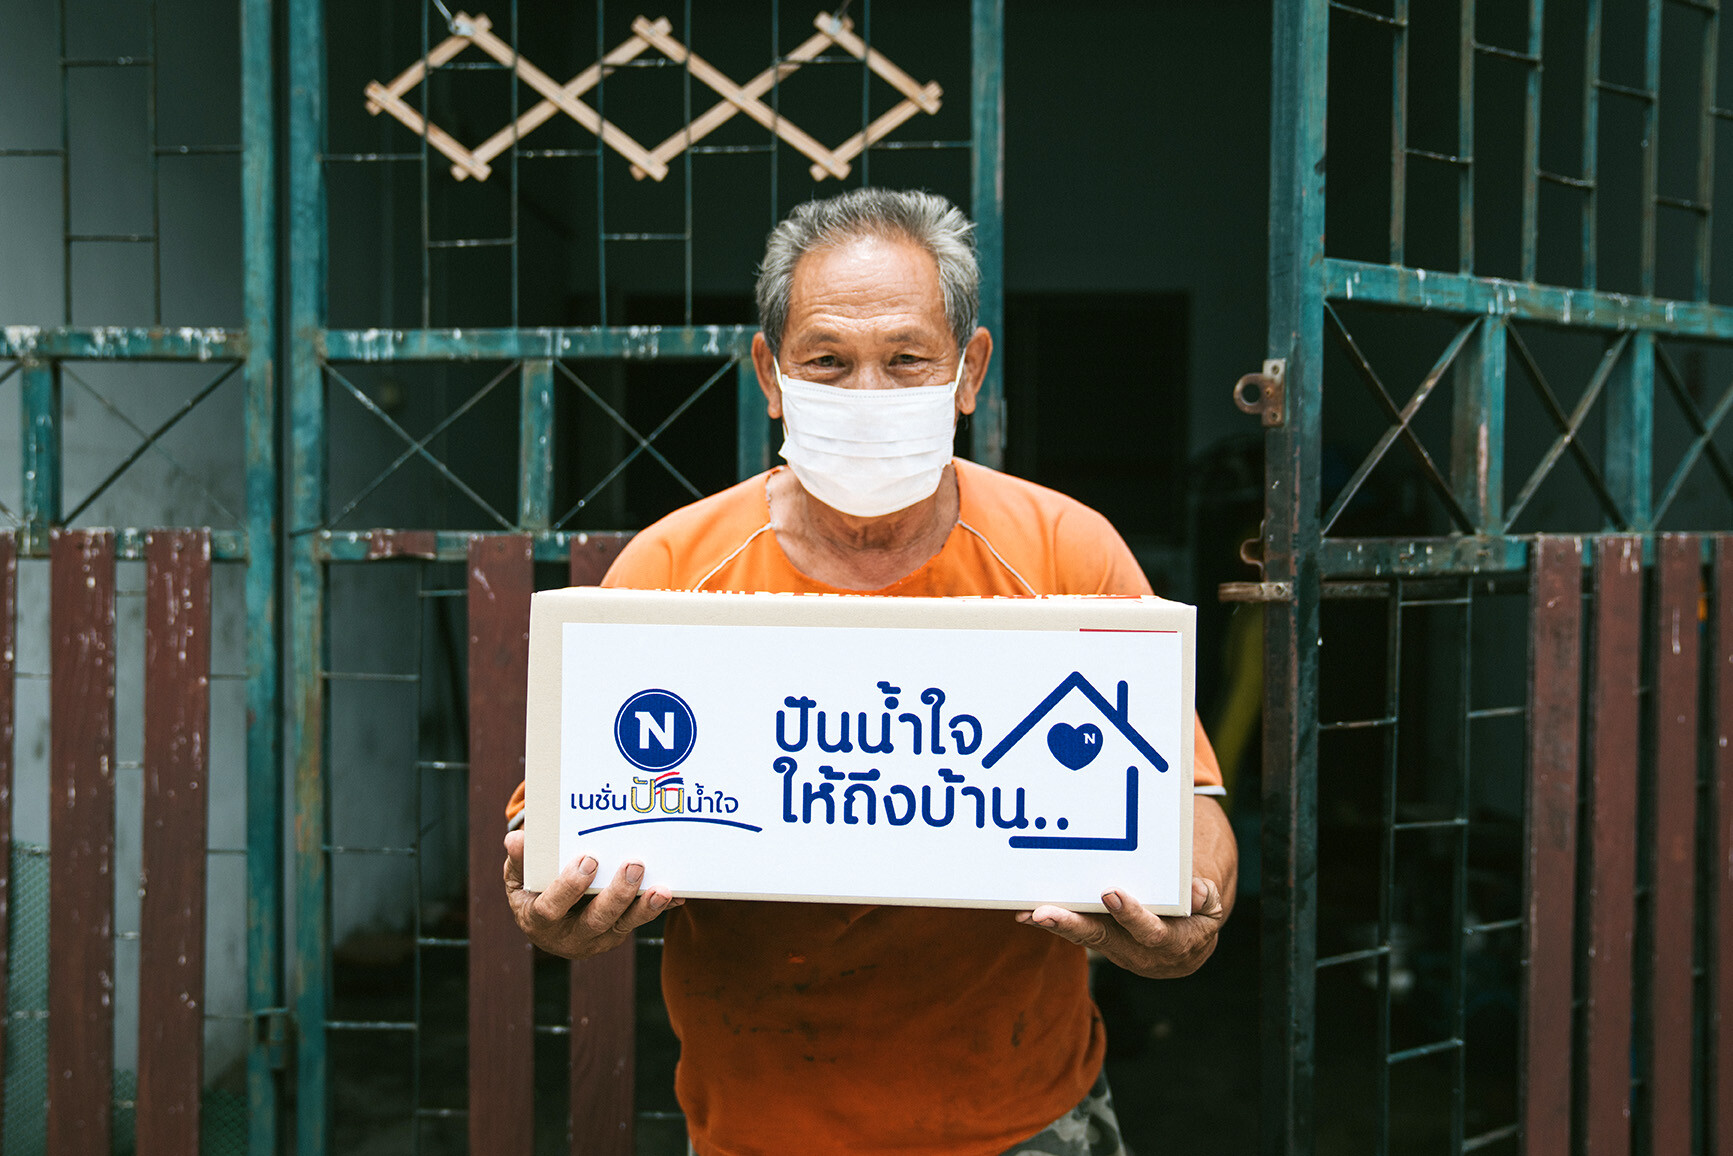 'เนชั่นทีวี' สานต่อความช่วยเหลือพี่น้องคนไทย ในโปรเจกต์ "ปันน้ำใจ...ให้ถึงบ้าน" มอบกล่องยังชีพส่งตรงถึงหน้าบ้าน ปลอดภัยและไร้การสัมผัส